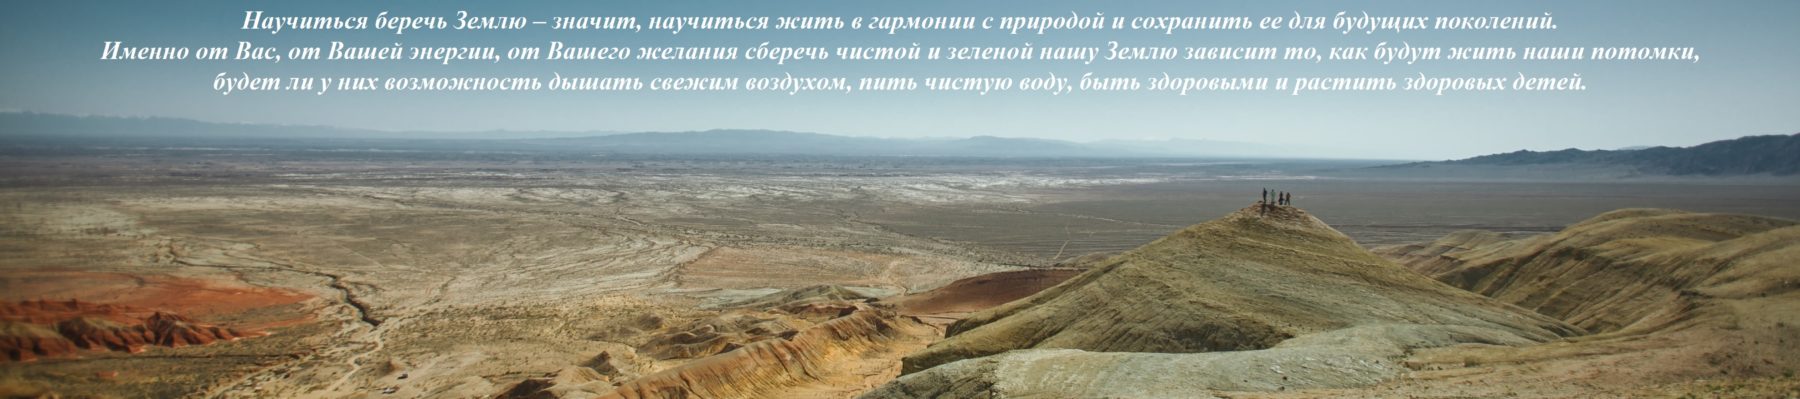 ОФ "Экологический Фонд Казахстана"